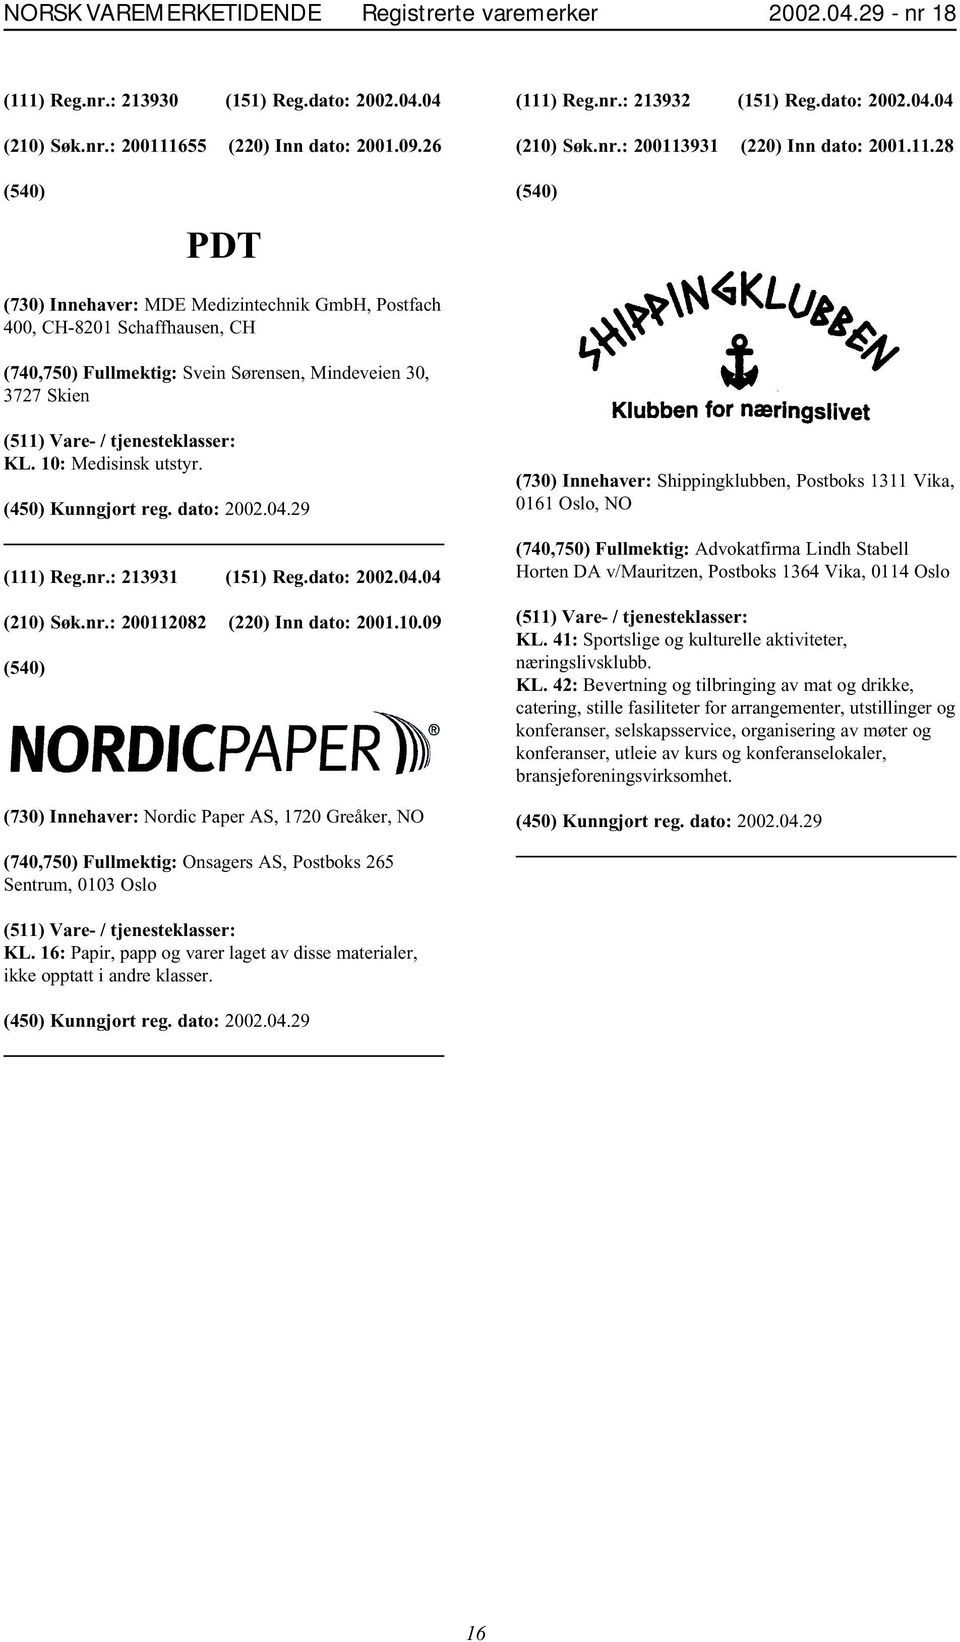 10: Medisinsk utstyr. (111) Reg.nr.: 213931 (151) Reg.dato: 2002.04.04 (210) Søk.nr.: 200112082 (220) Inn dato: 2001.10.09 (730) Innehaver: Nordic Paper AS, 1720 Greåker, NO (730) Innehaver: